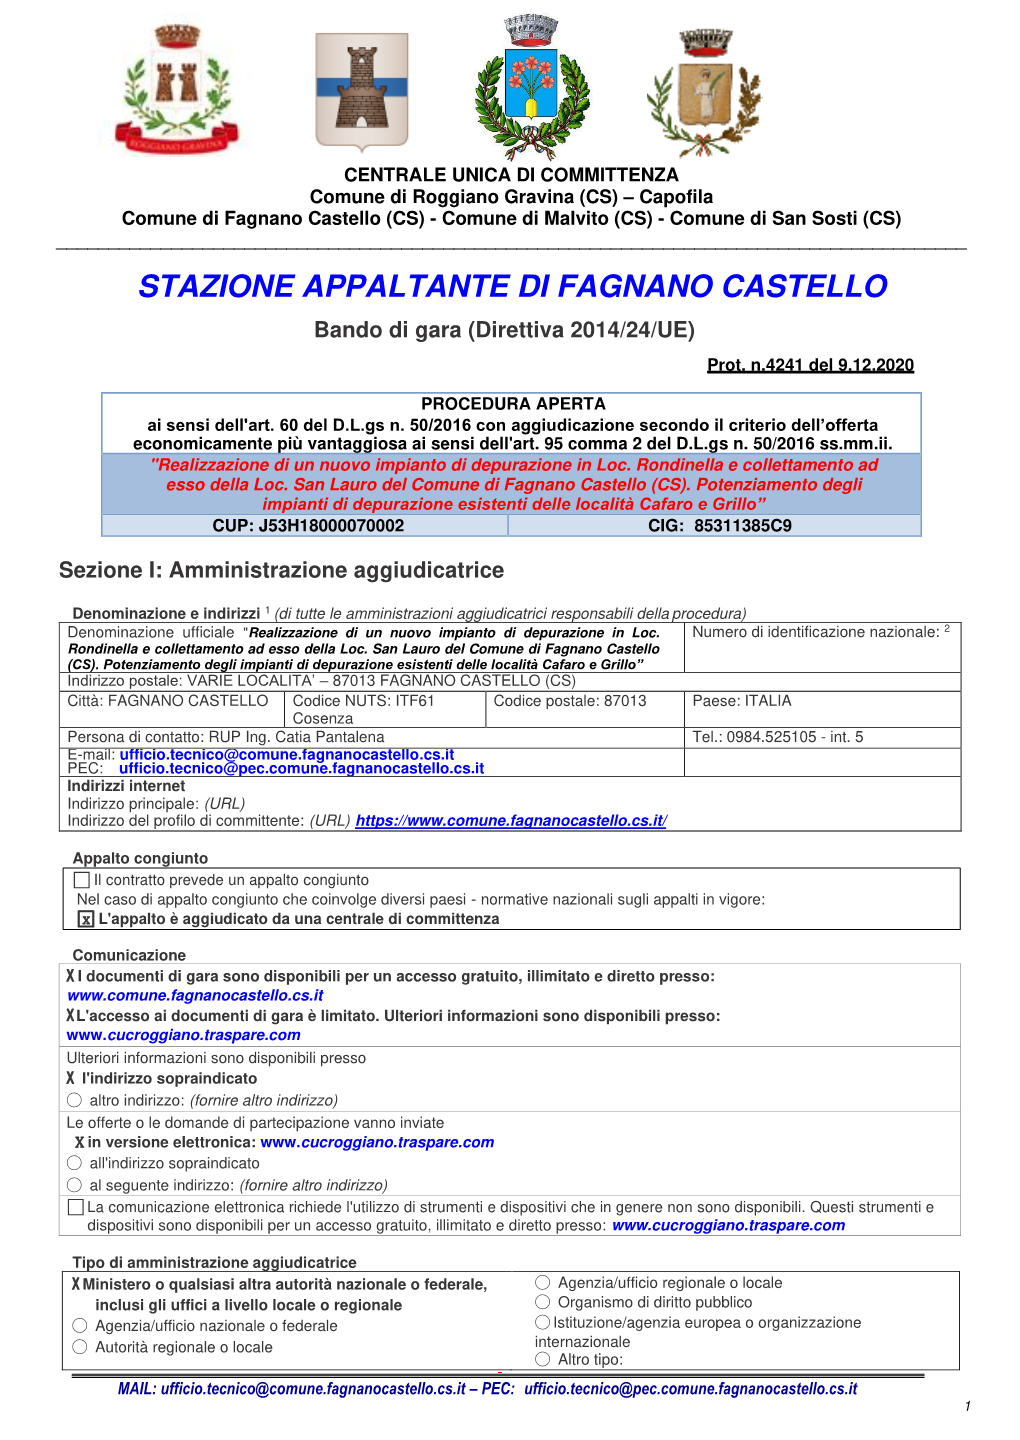 STAZIONE APPALTANTE DI FAGNANO CASTELLO Bando Di Gara (Direttiva 2014/24/UE)